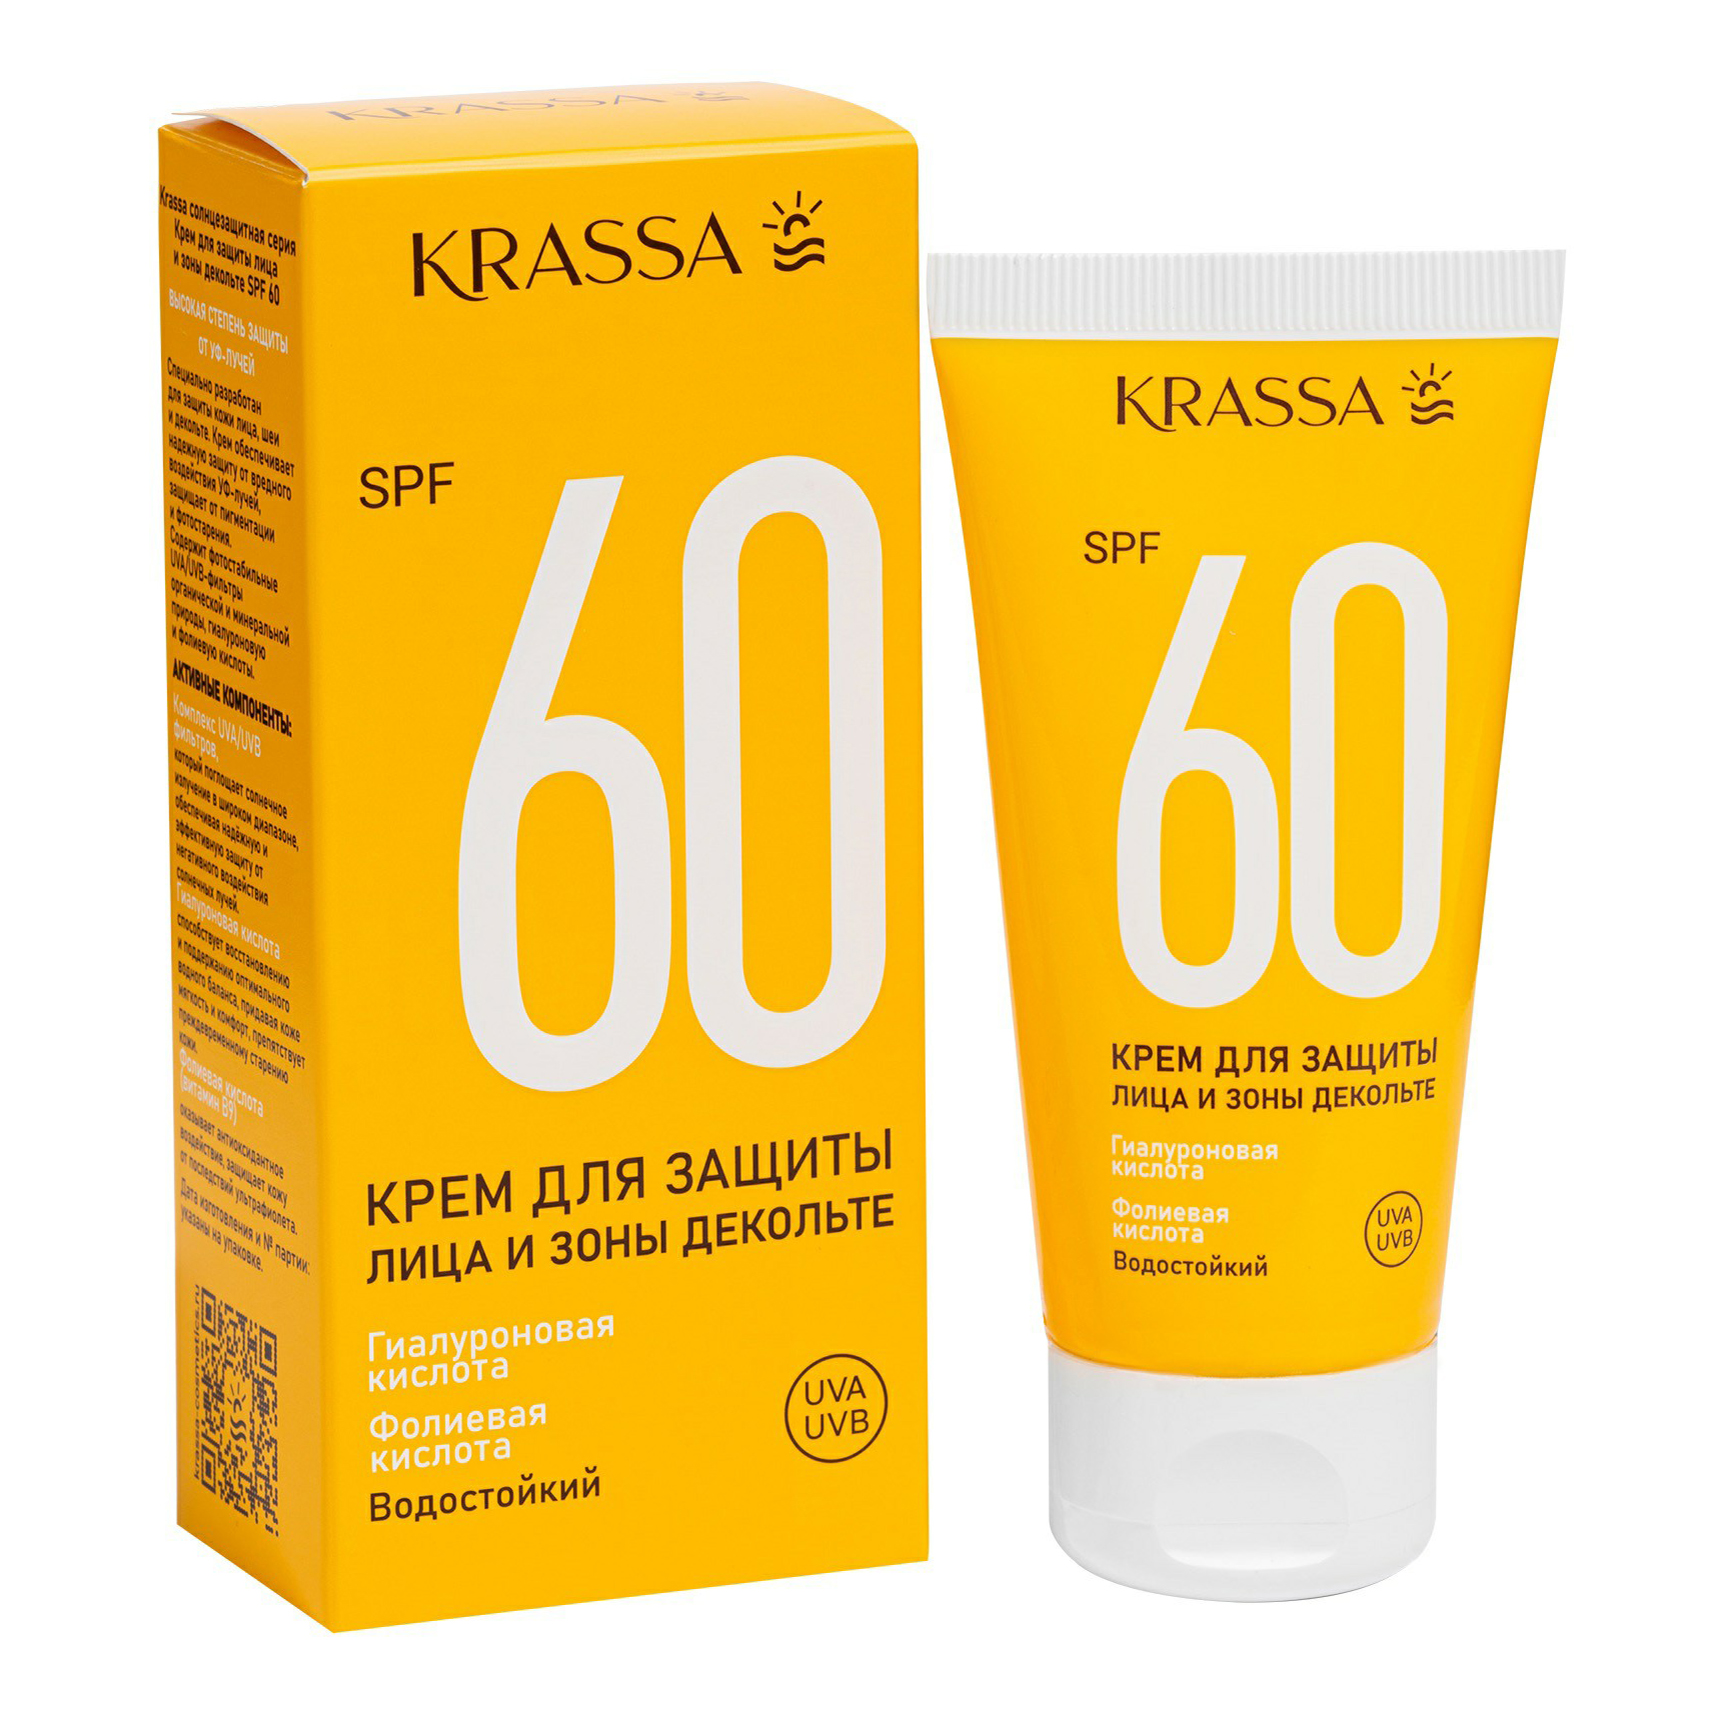 Солнцезащитный Krassa для лица и зоны декольте 60 SPF 50 мл krassa sun expert спрей для защиты от солнца spf 40 180